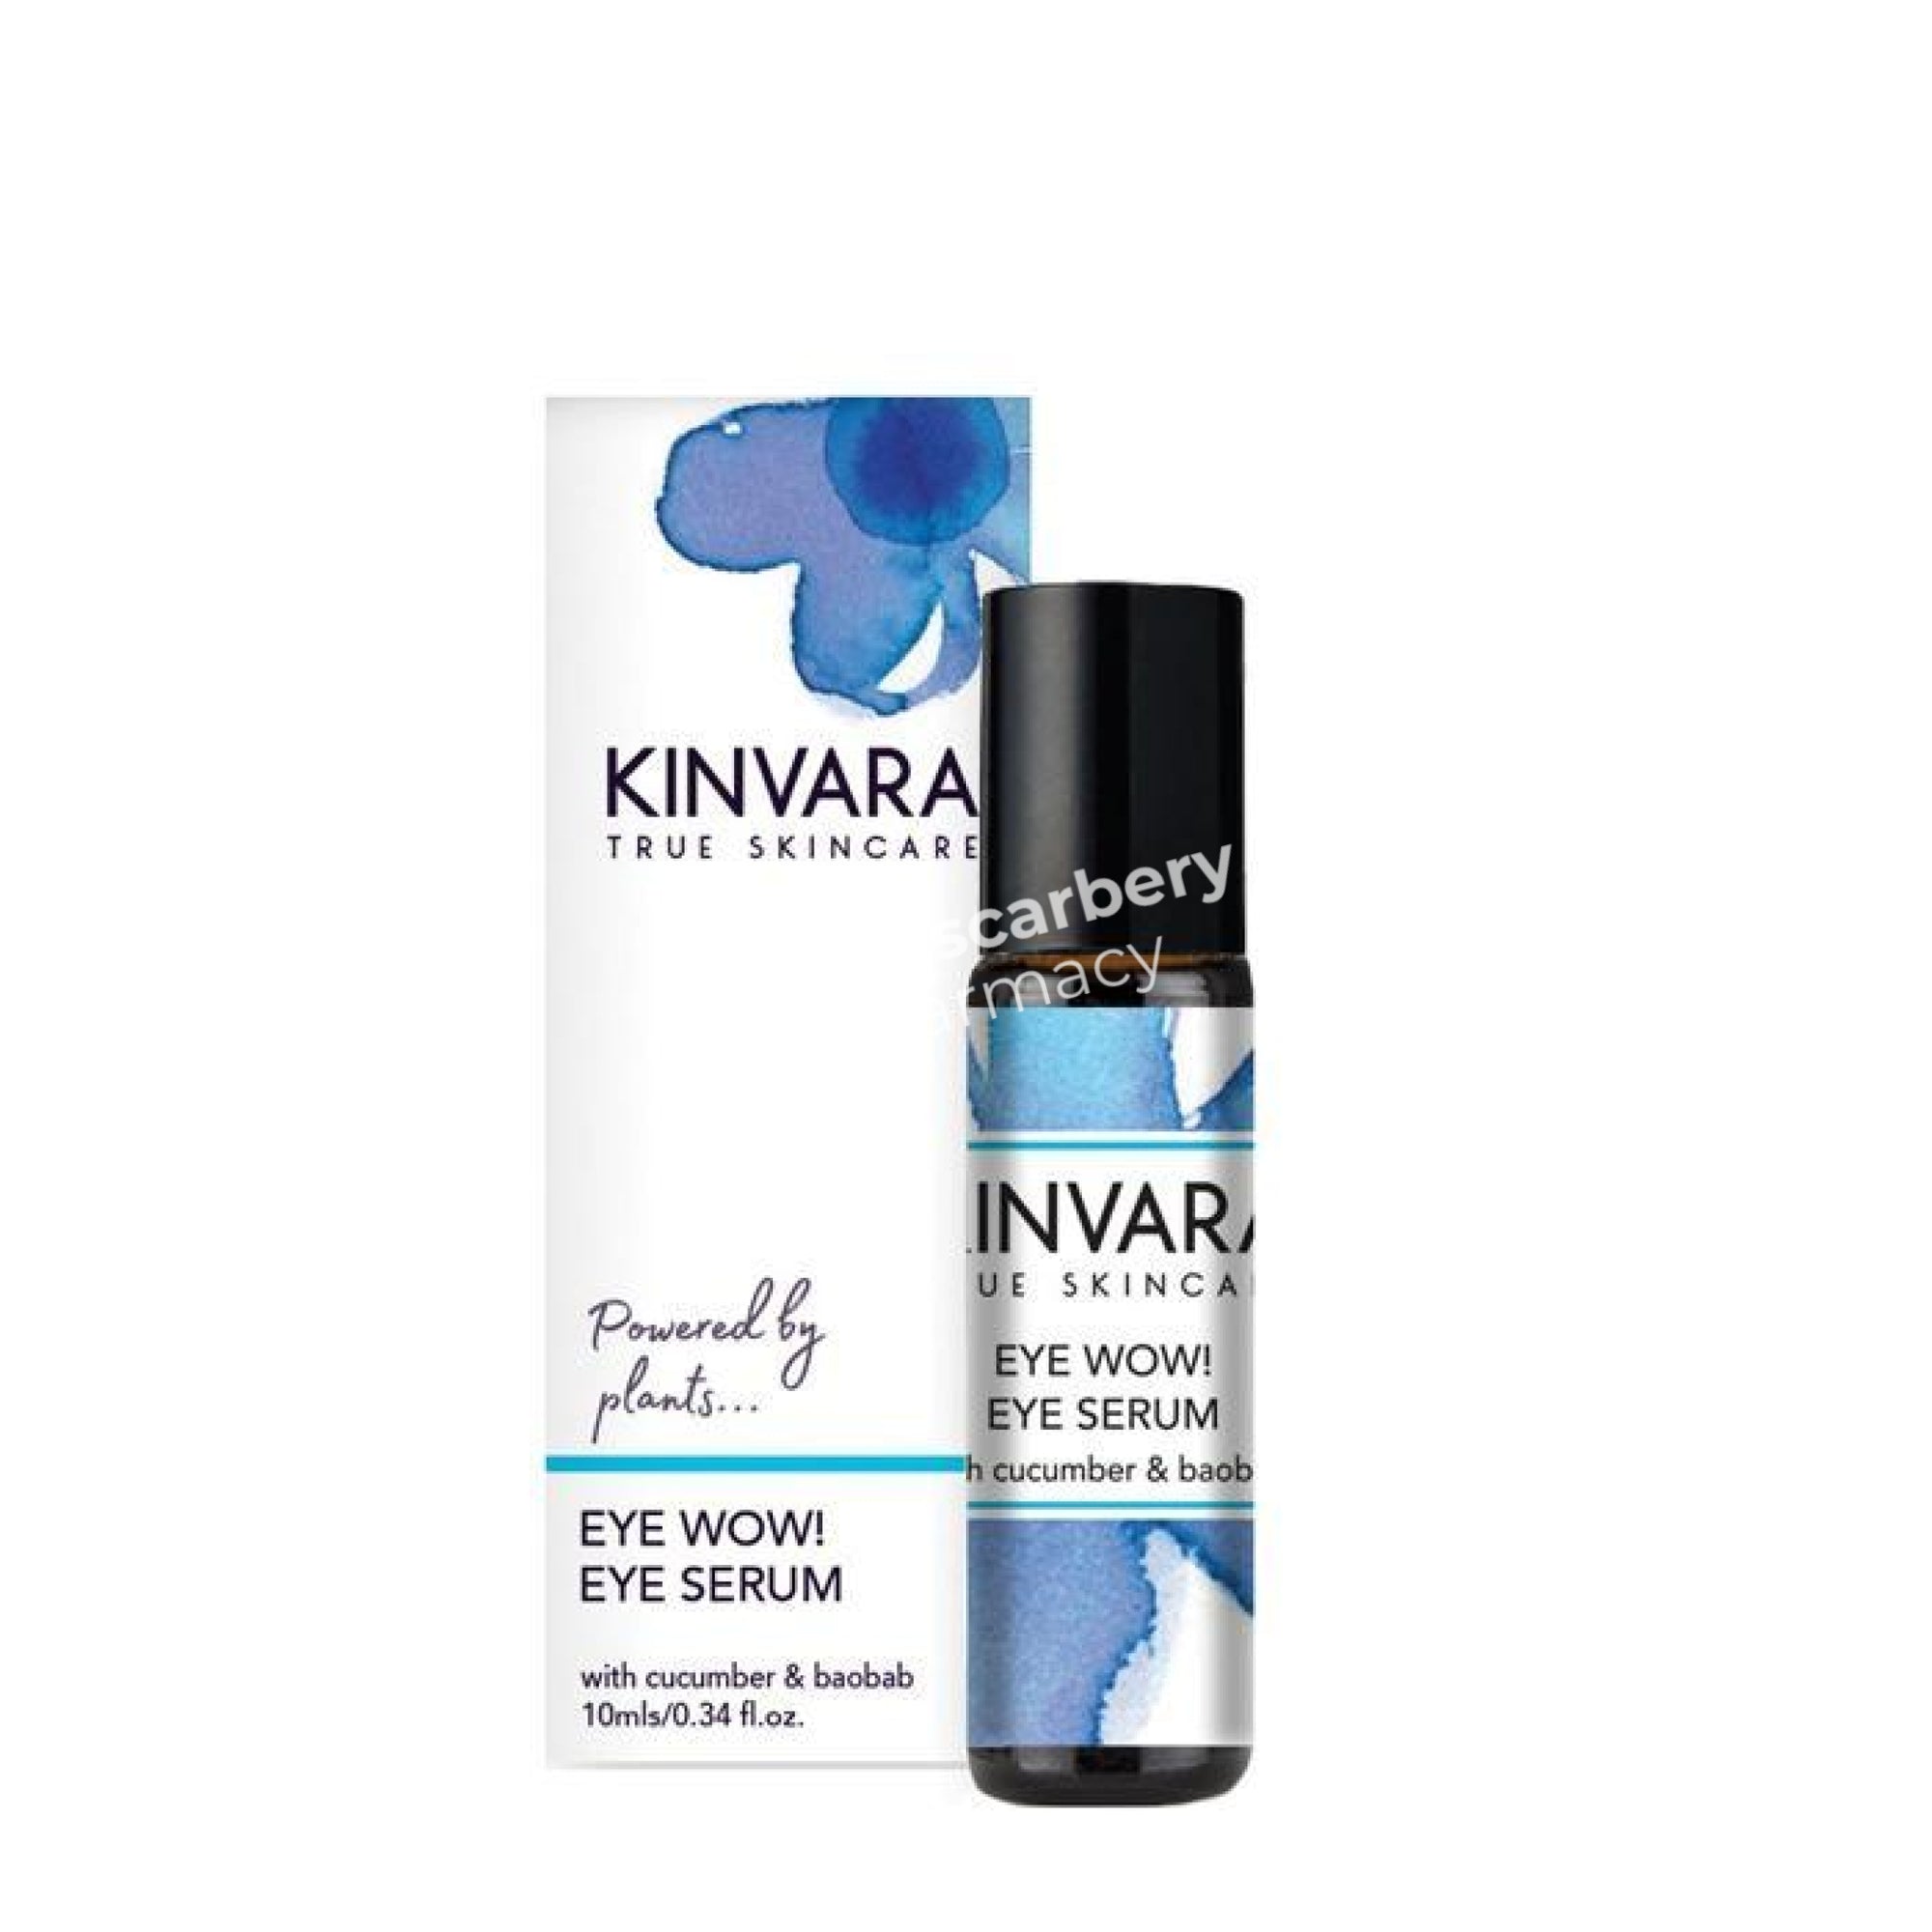 Kinvara Eye Wow! Serum Cream